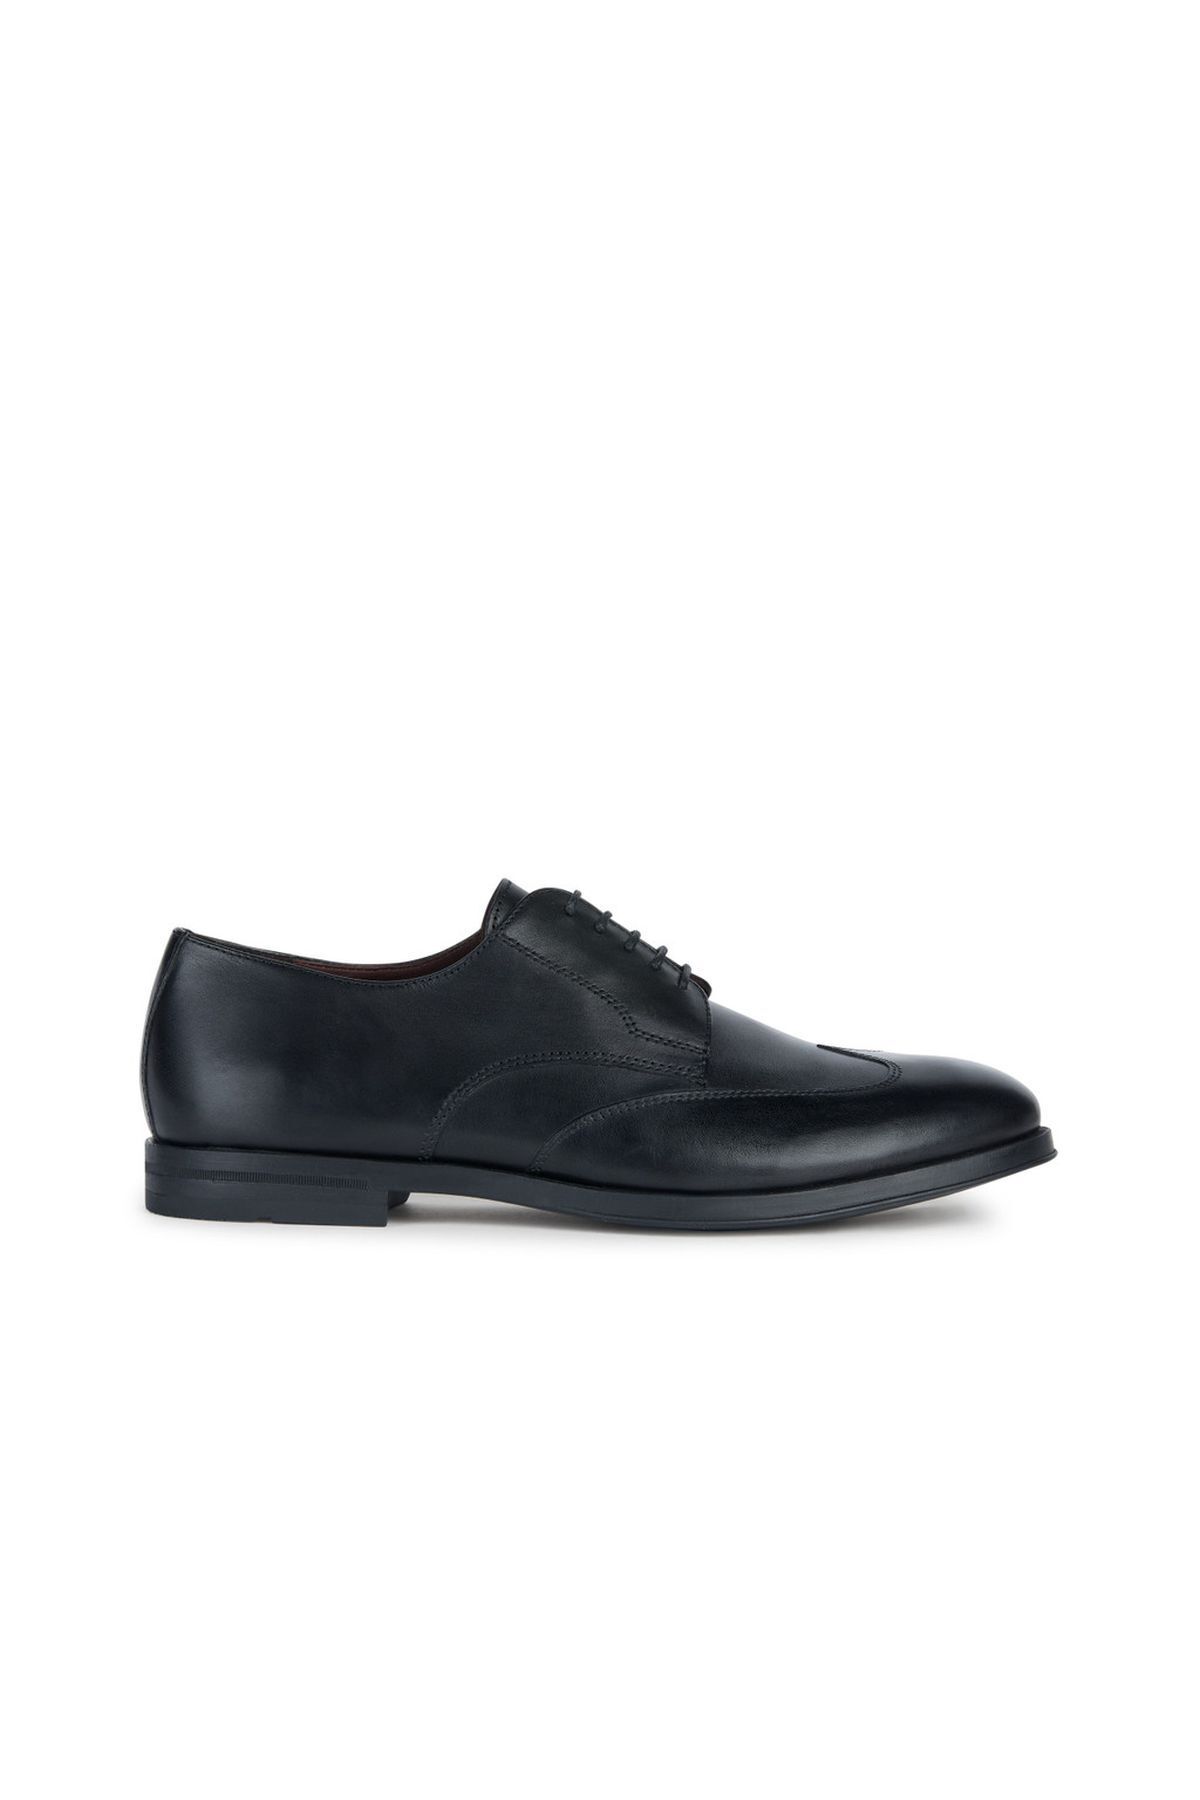 Geox Erkek Siyah Decio Bağcıklı Deri Klasik Ayakkabı